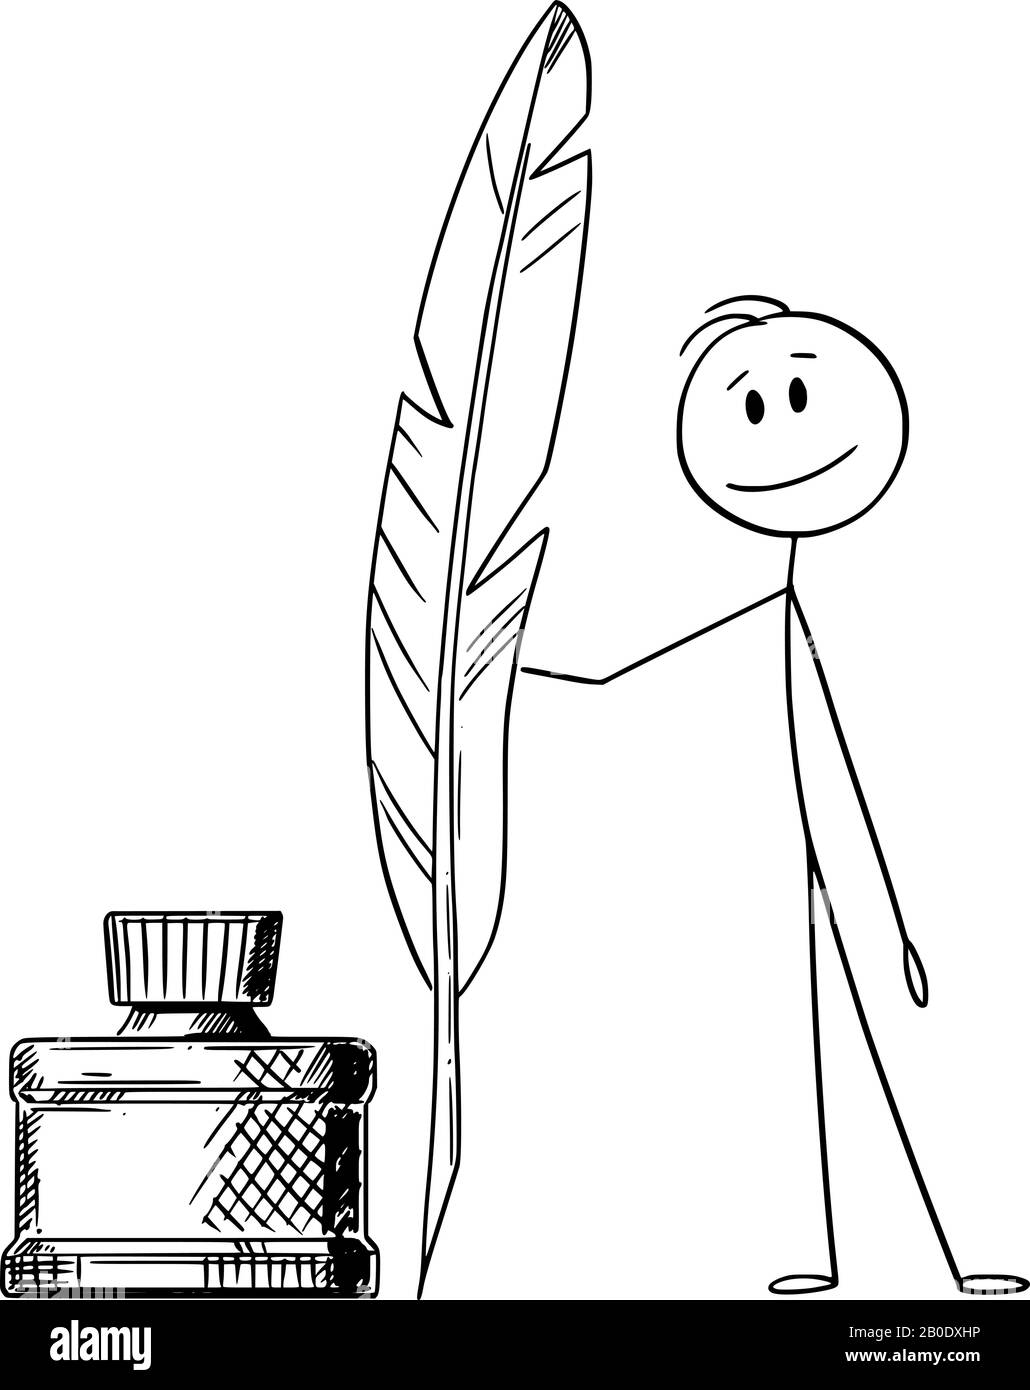 Vektor-Cartoon-Stick-Figur mit konzeptioneller Illustration von Mensch, Schriftsteller oder Dichter mit Quill-Stift und Tintenflasche. Stock Vektor